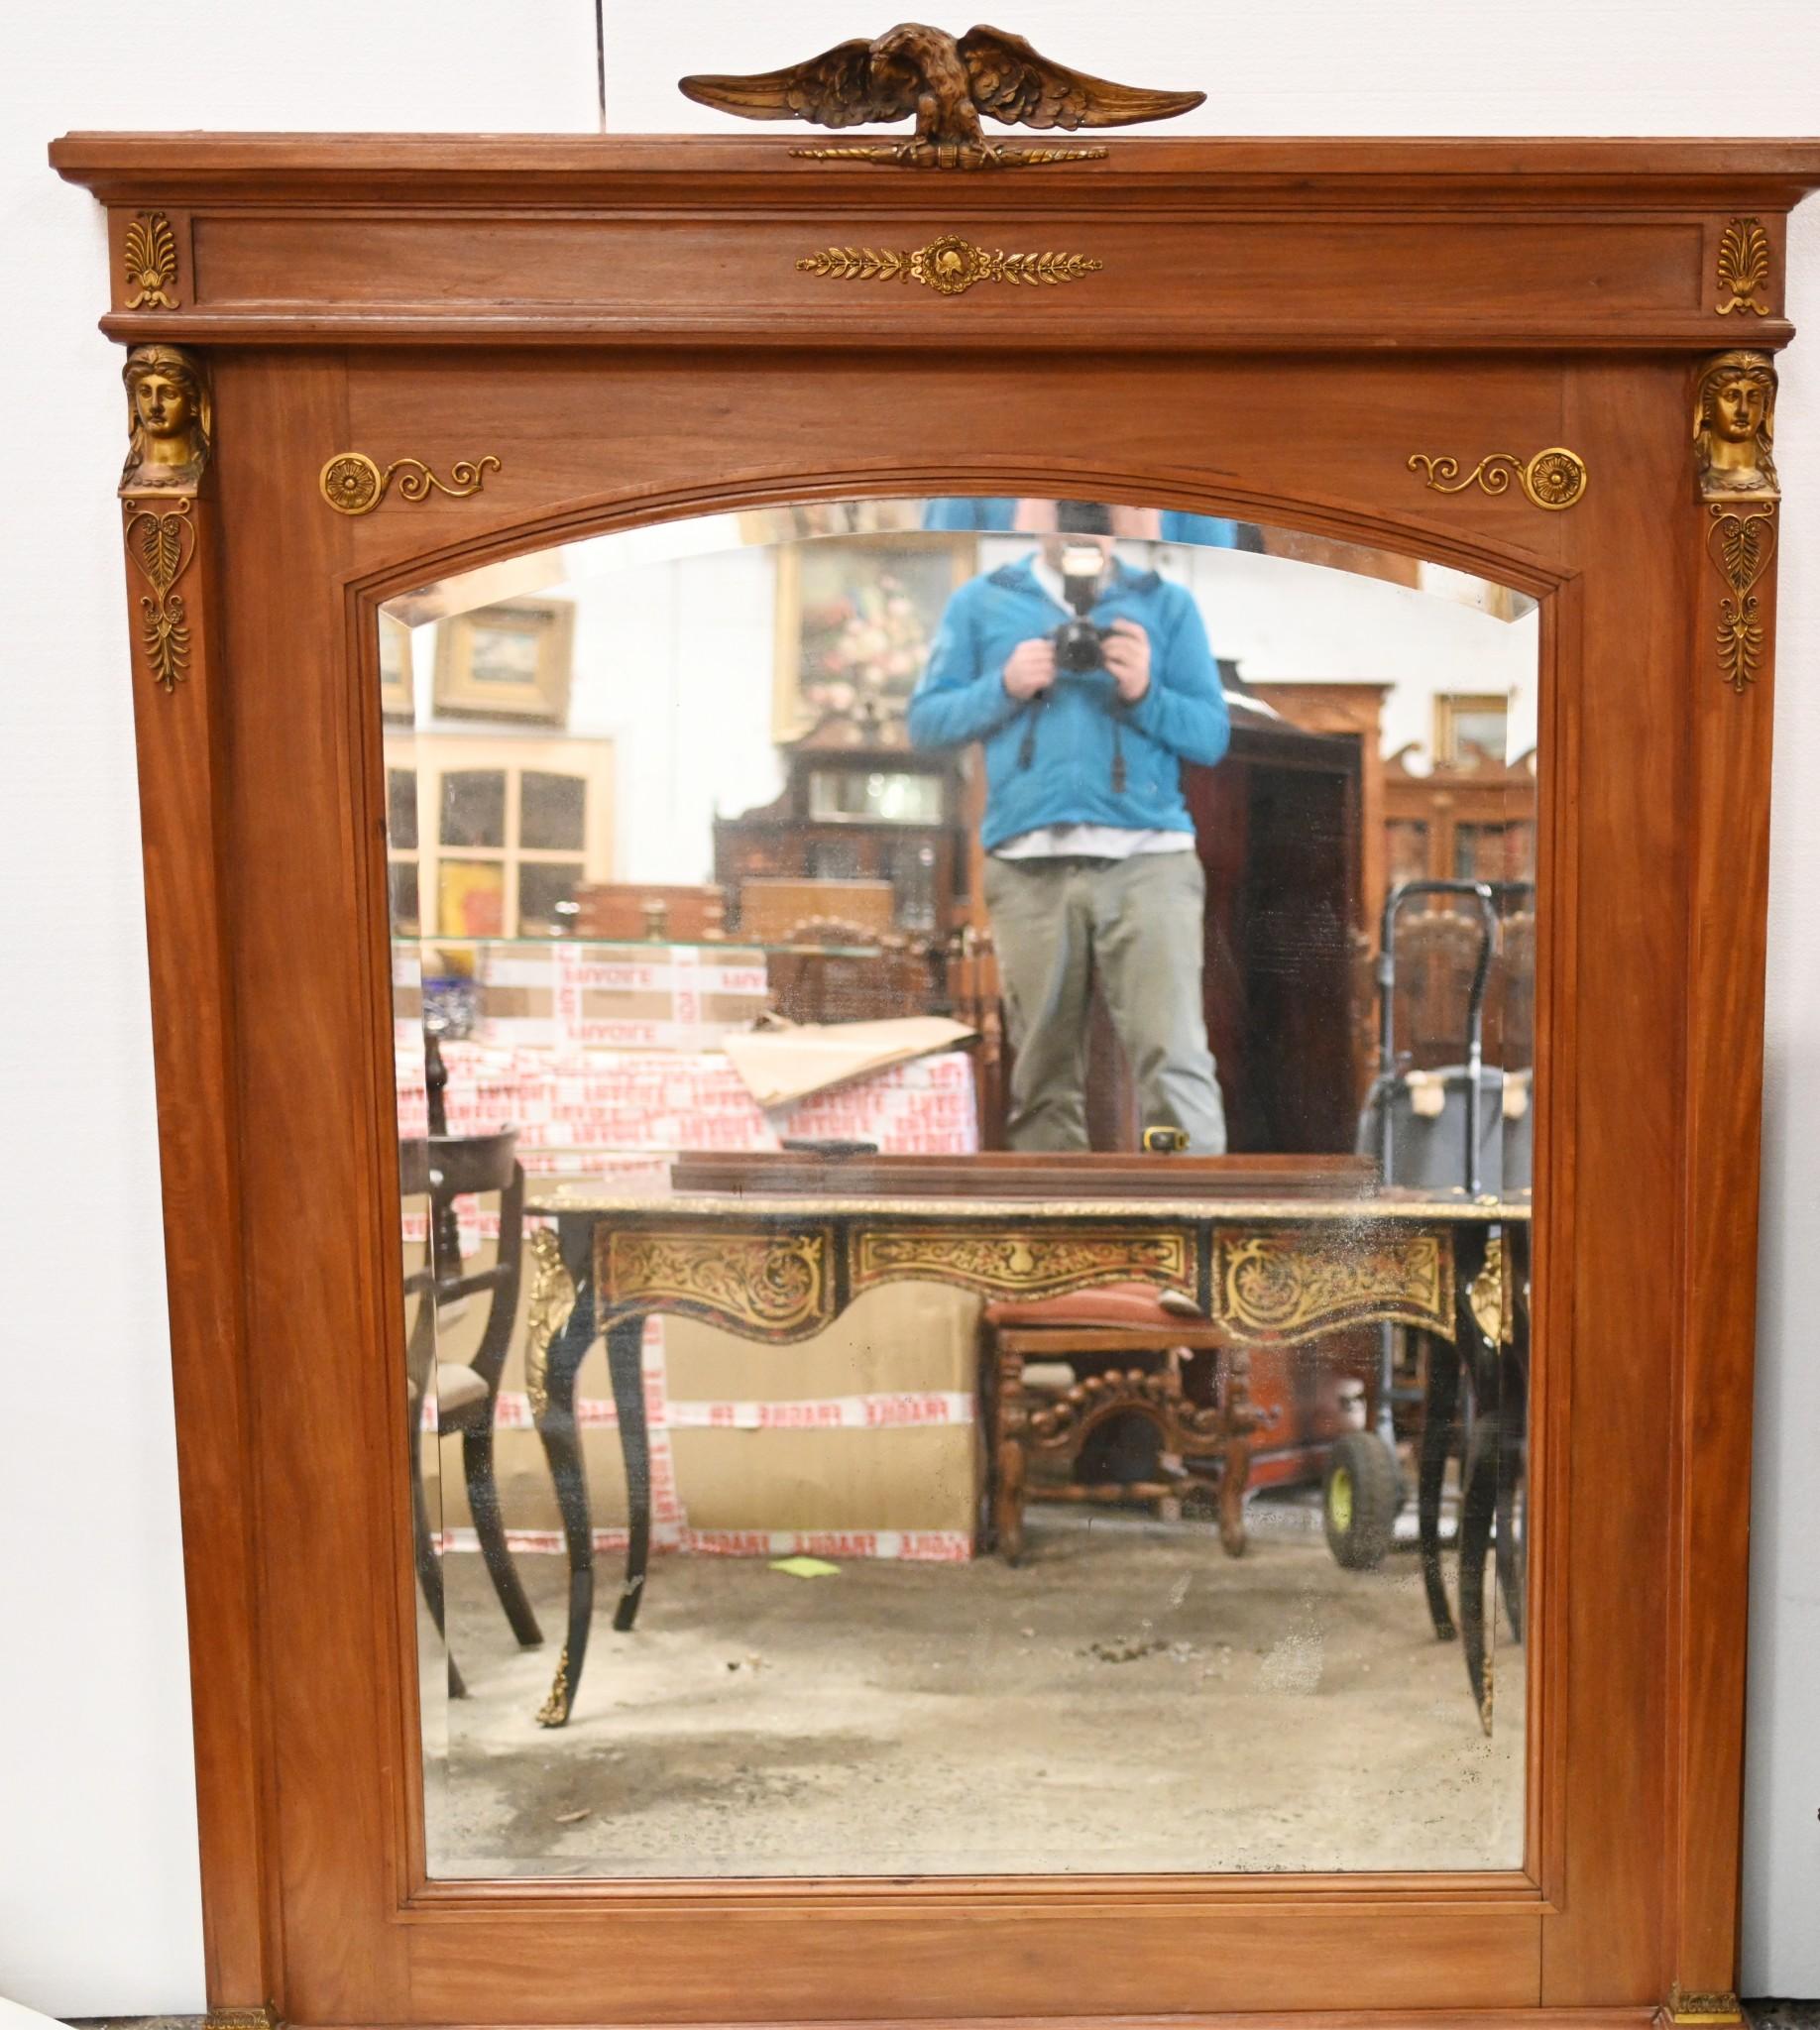 Elegant et raffiné miroir à trumeau Empire français en bois satiné.
Nous datons cette œuvre d'art d'environ 1840. 
Bonne taille (plus d'un mètre quatre-vingt-dix)
Les luminaires dorés sont d'origine et comprennent les colonnes surmontées d'une tête